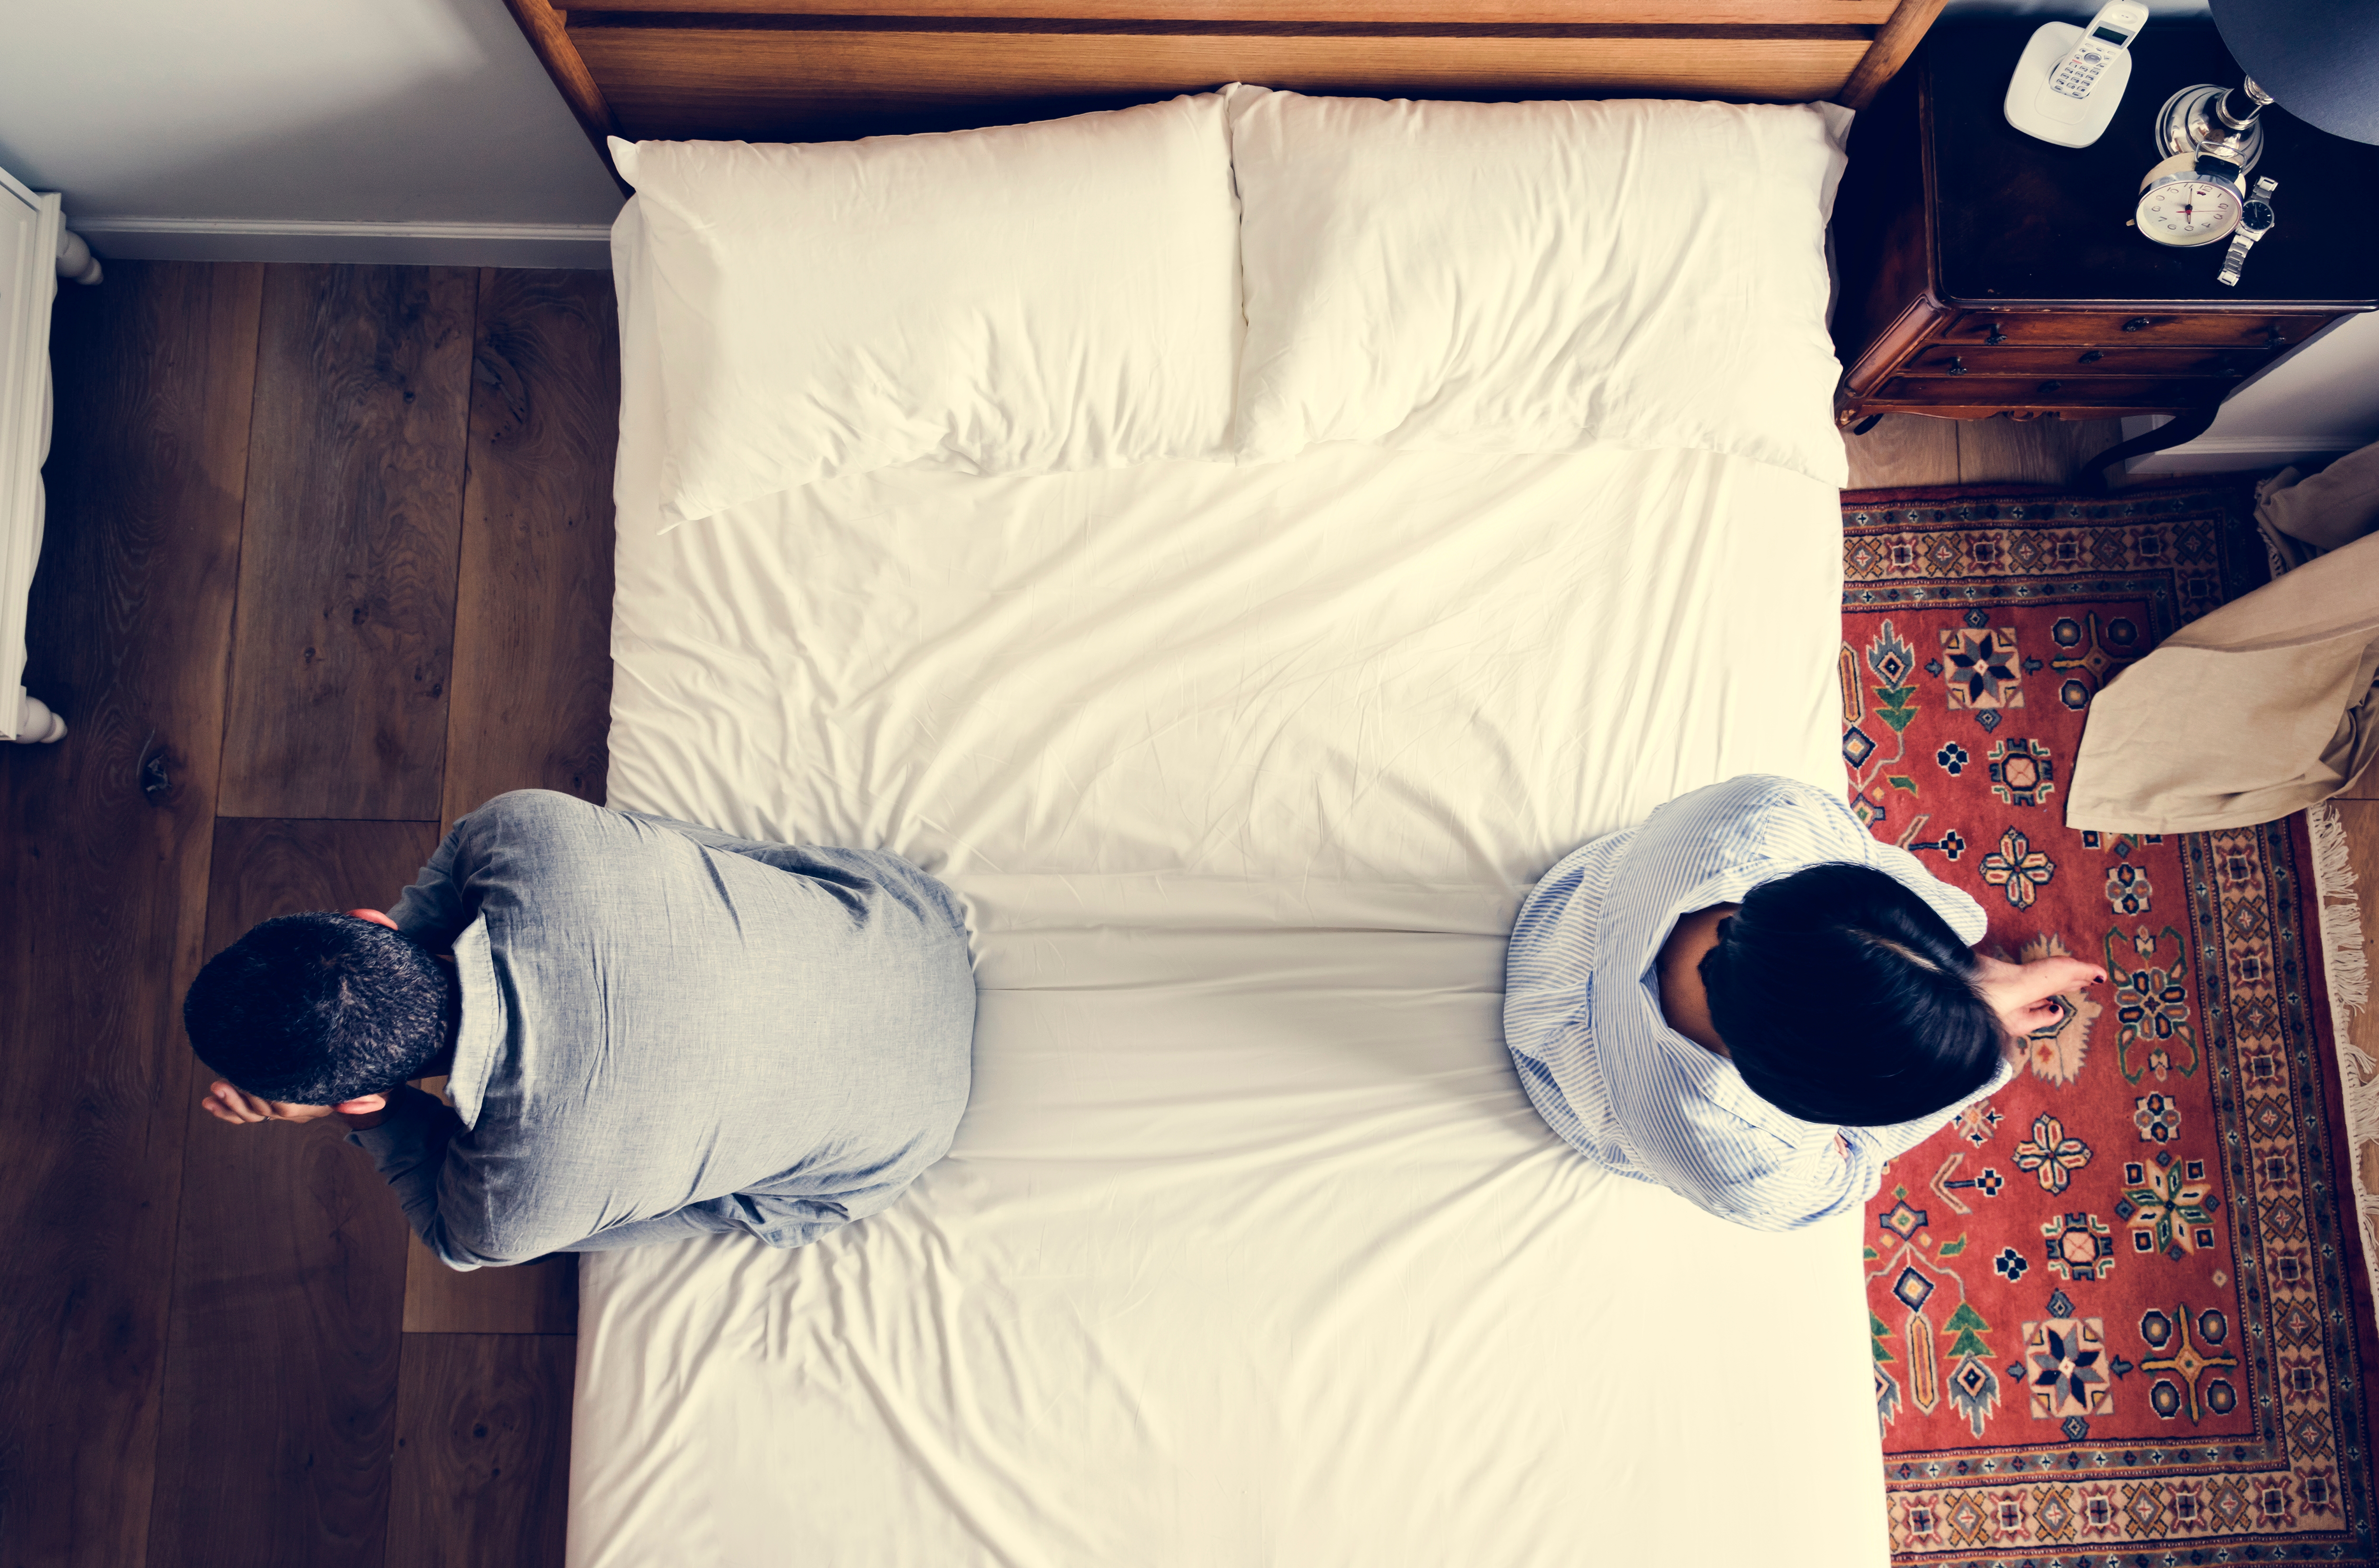 Una pareja sentada en extremos opuestos de la cama tras una discusión | Foto: Shutterstock